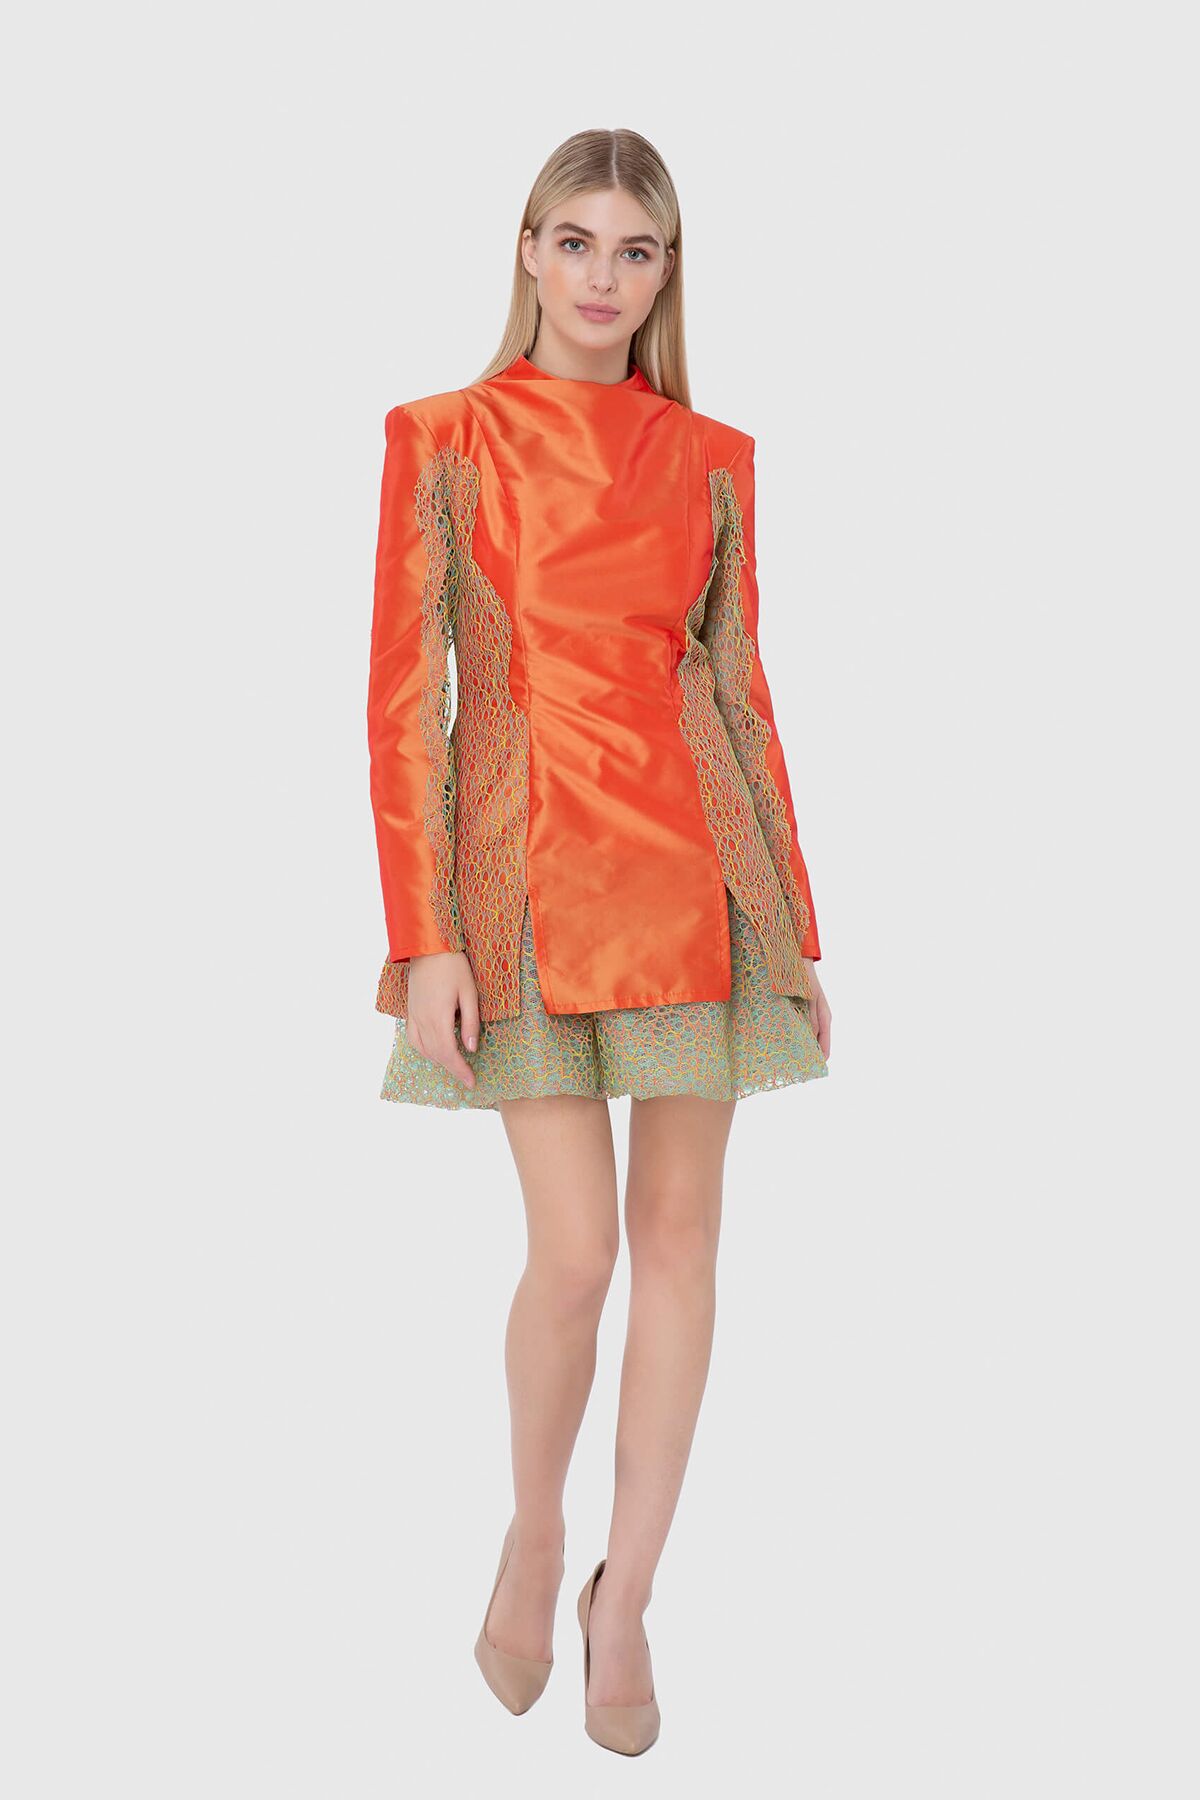 MANI MANI - Orange Lace Detailing Dress